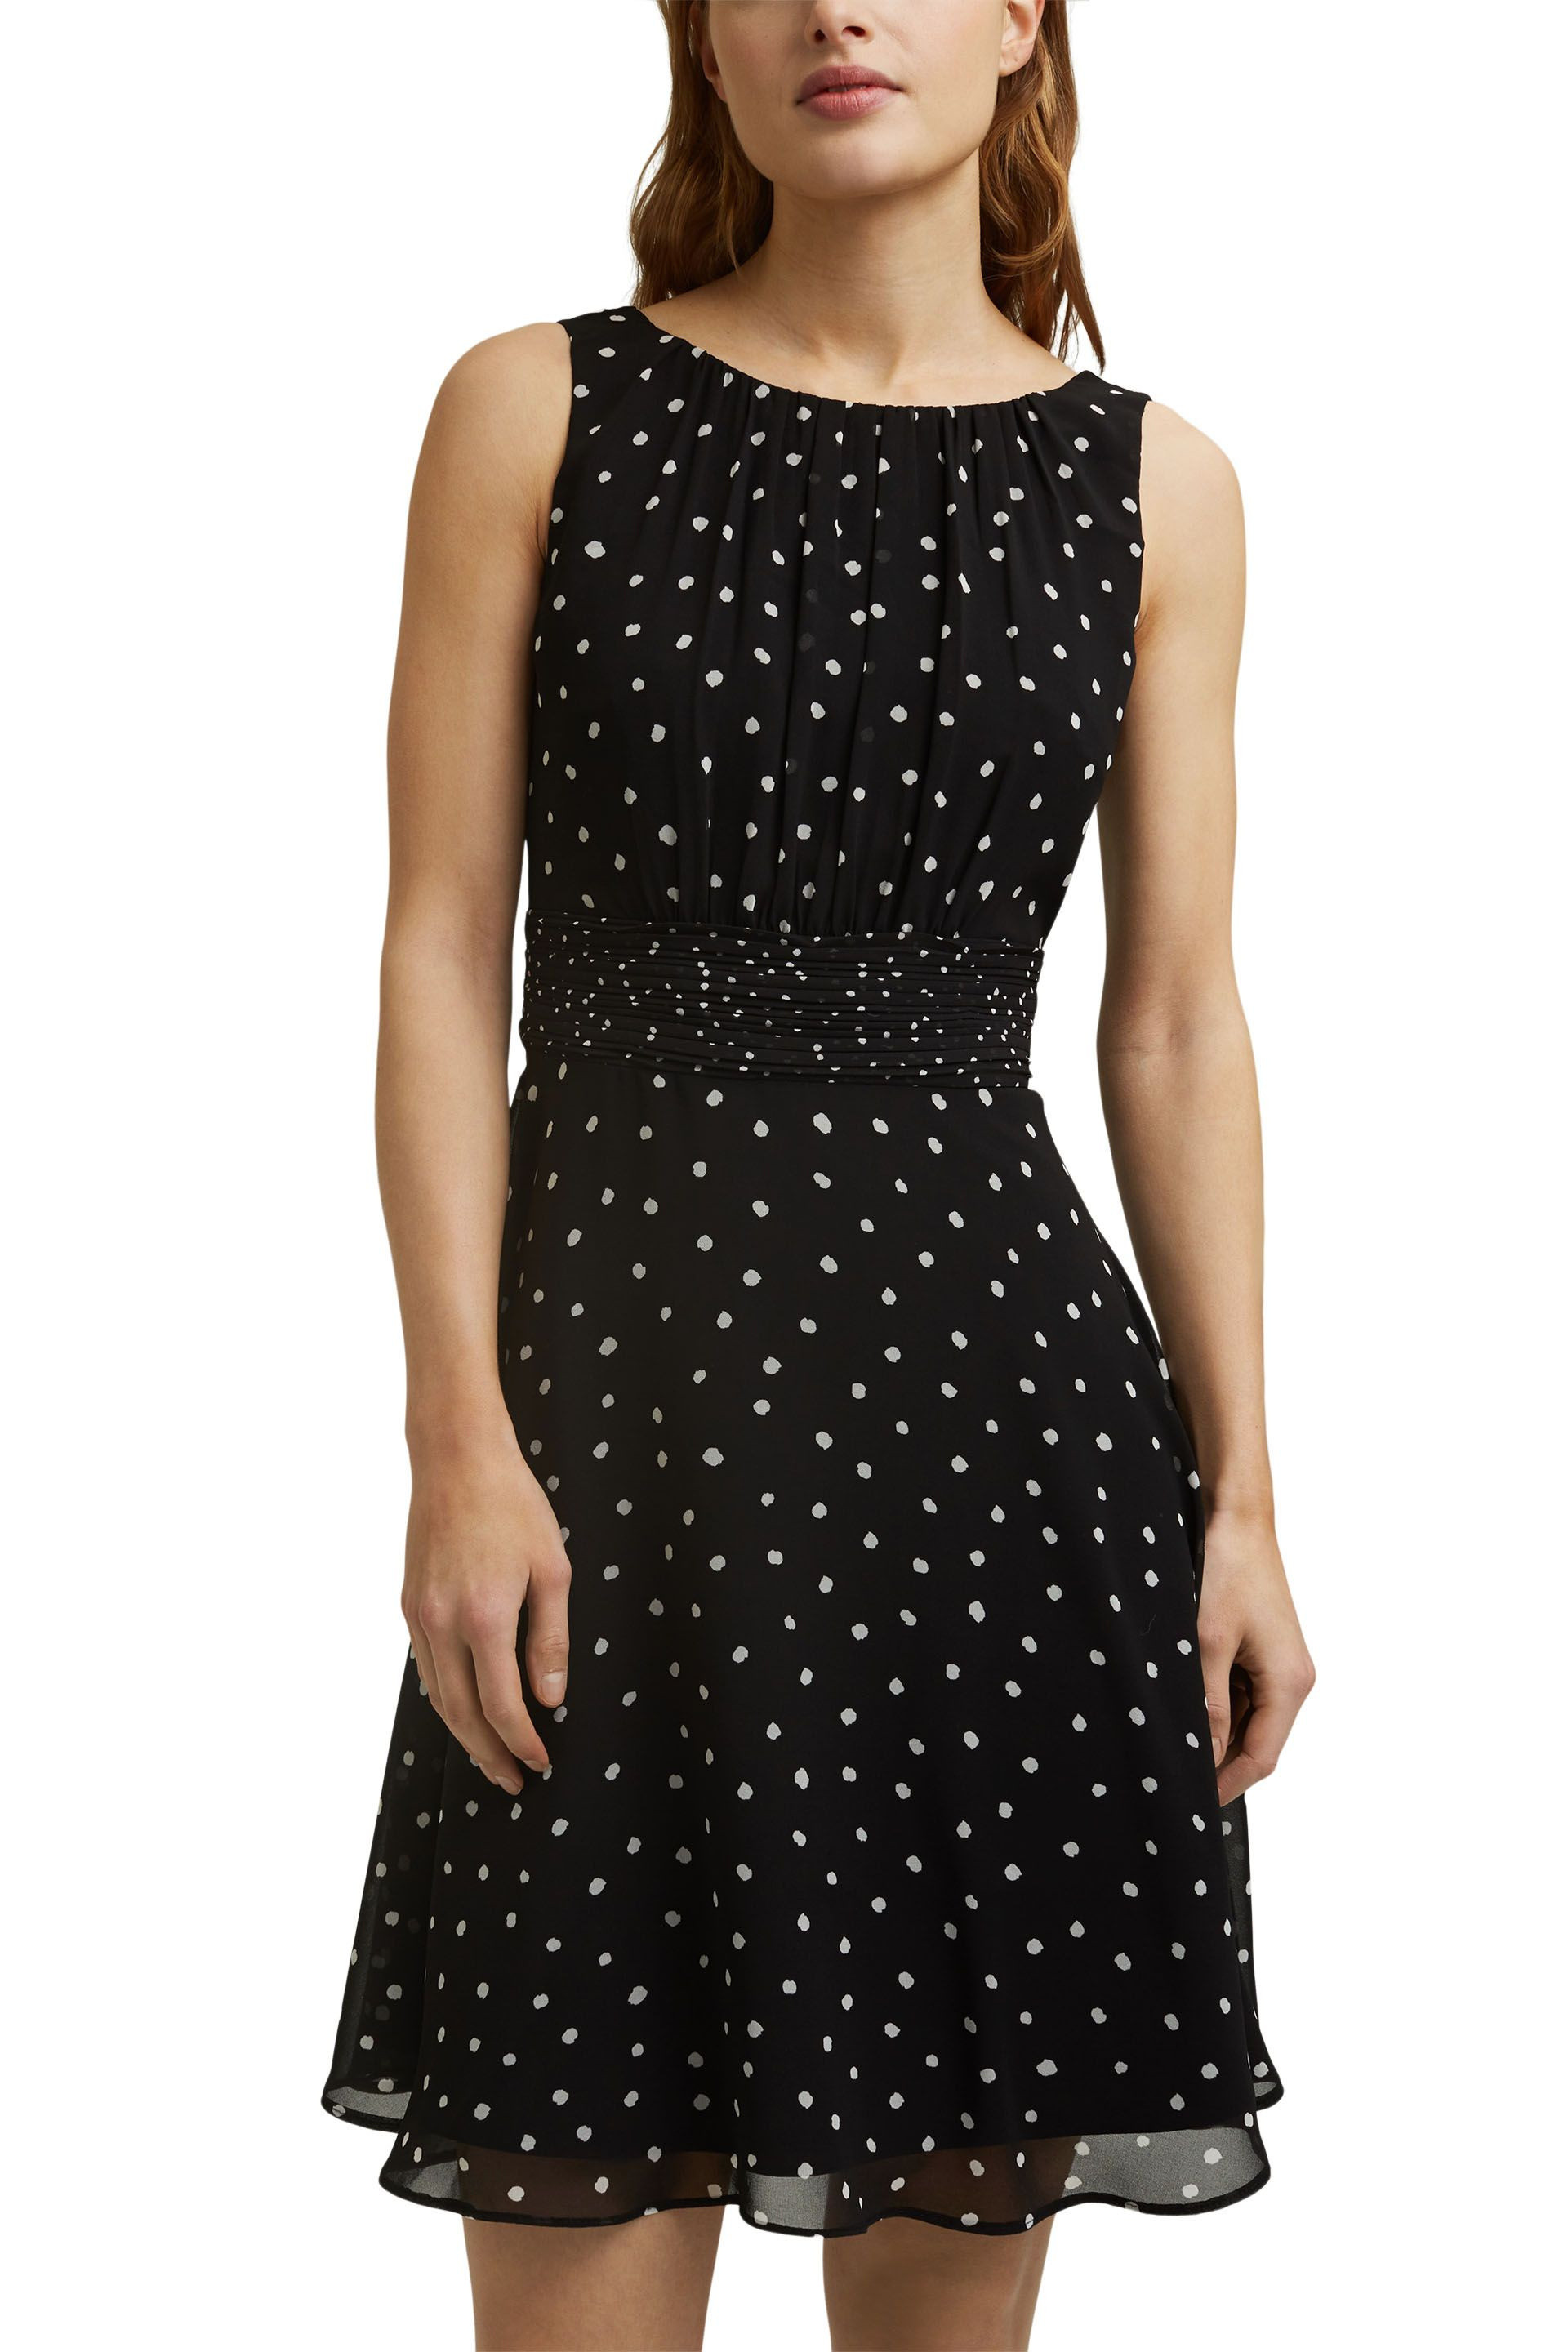 Esprit - Polka dot dress, Black, large image number 2